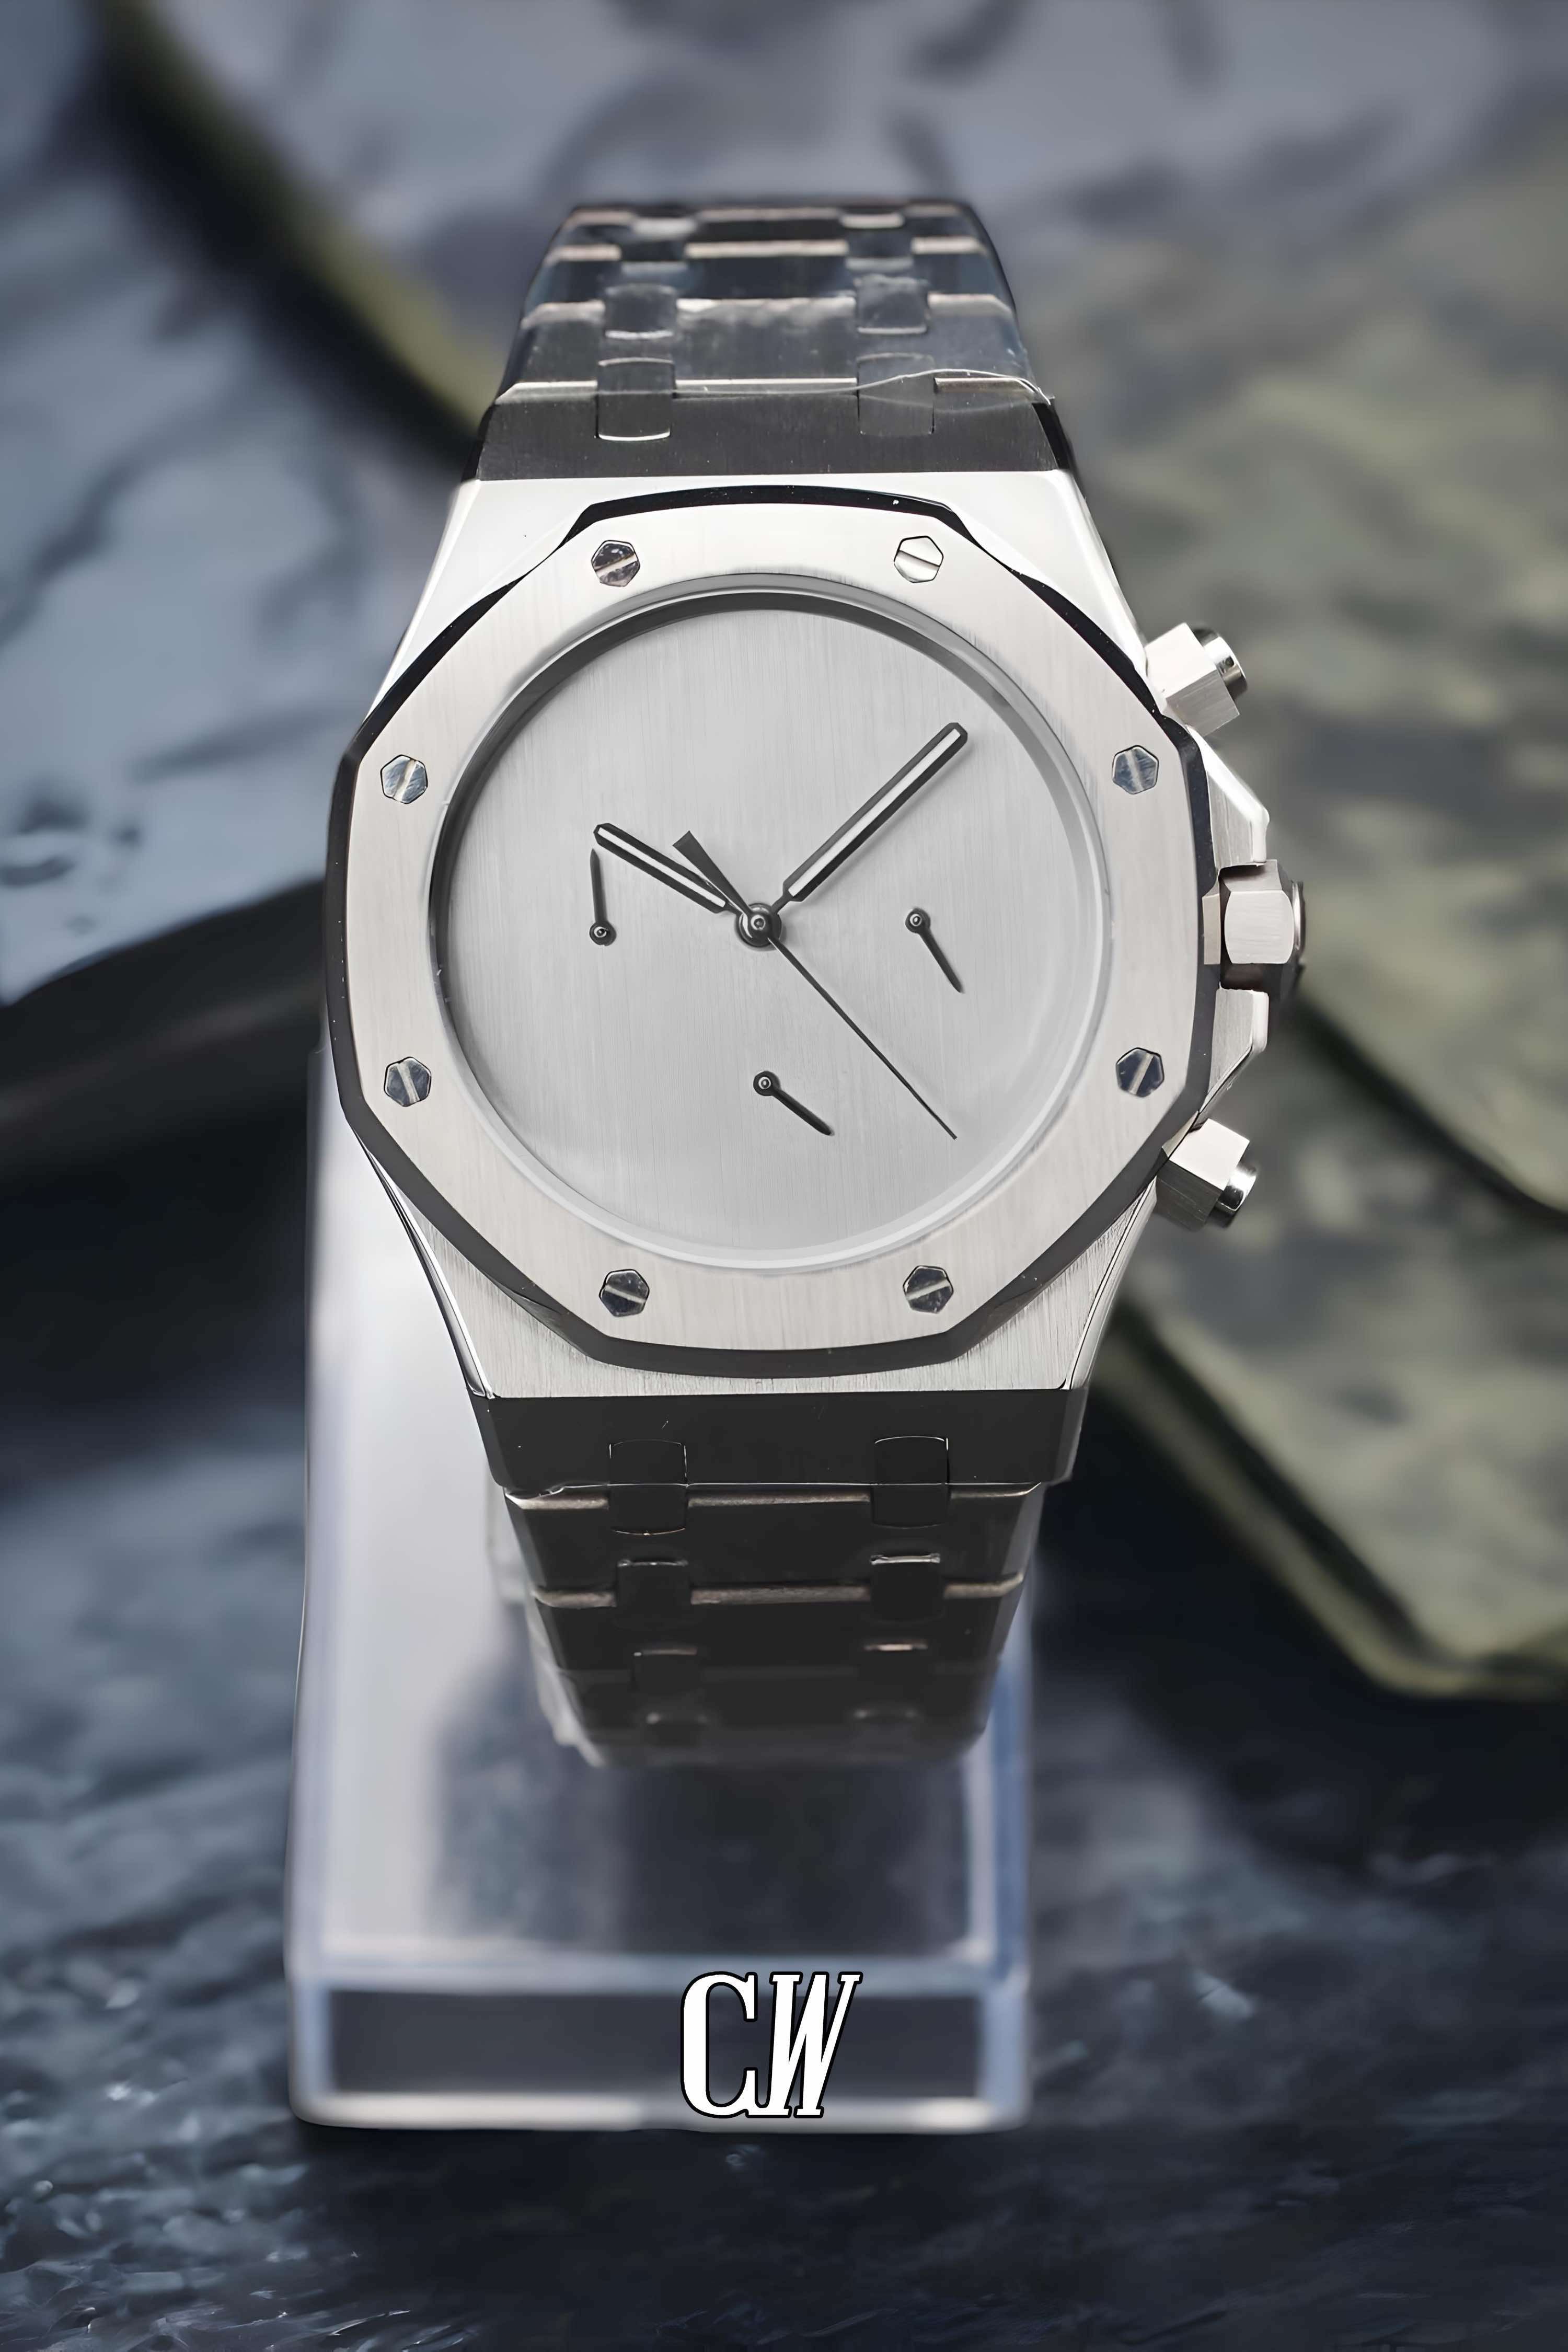 Mod Royal Seiko-oak chronograph 'Alyx style' watch